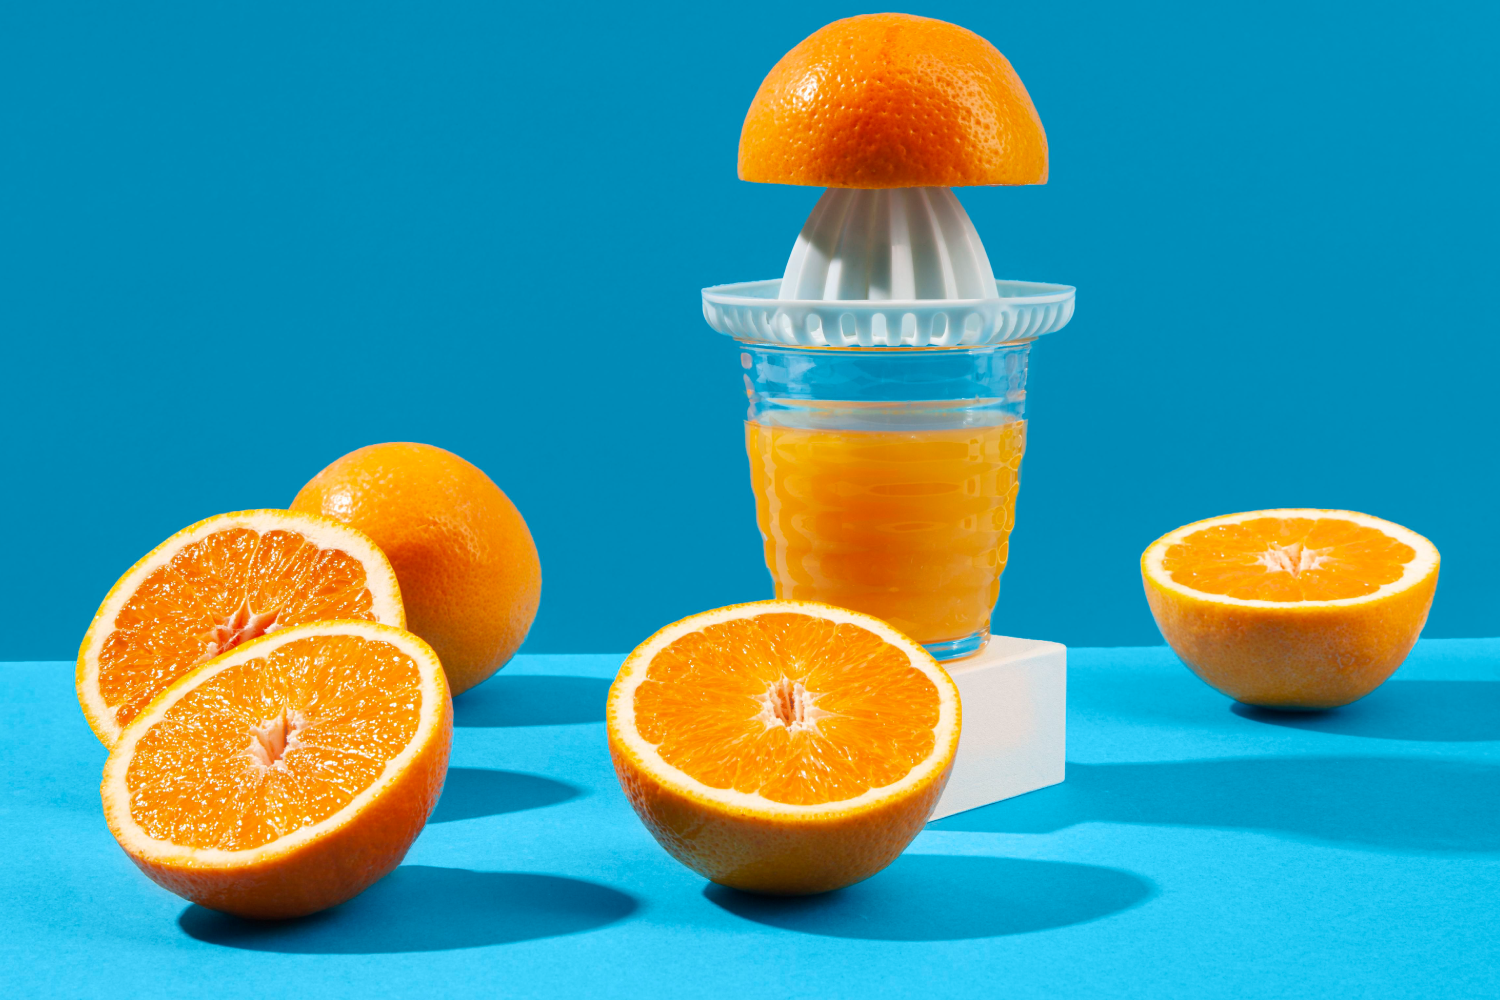 Le jus d'orange pressé, c'est toujours une bonne idée ! - Blog